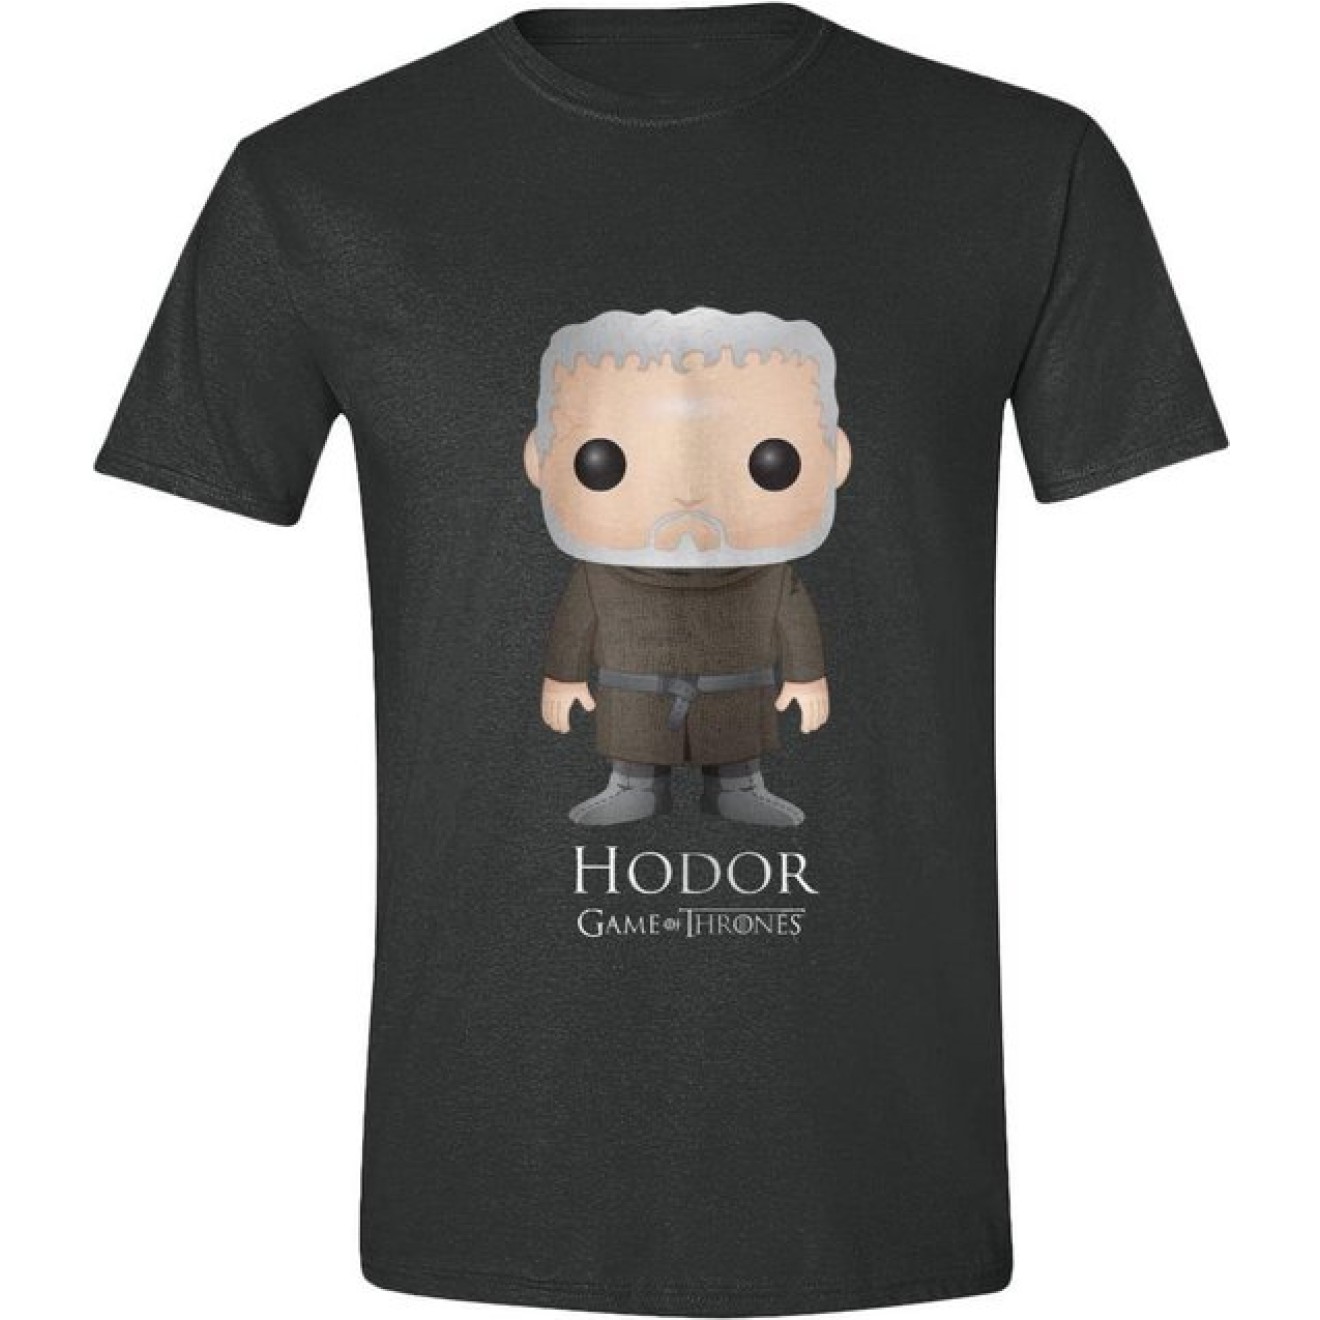 Game of Thrones T-Shirt Pop Art Hodor